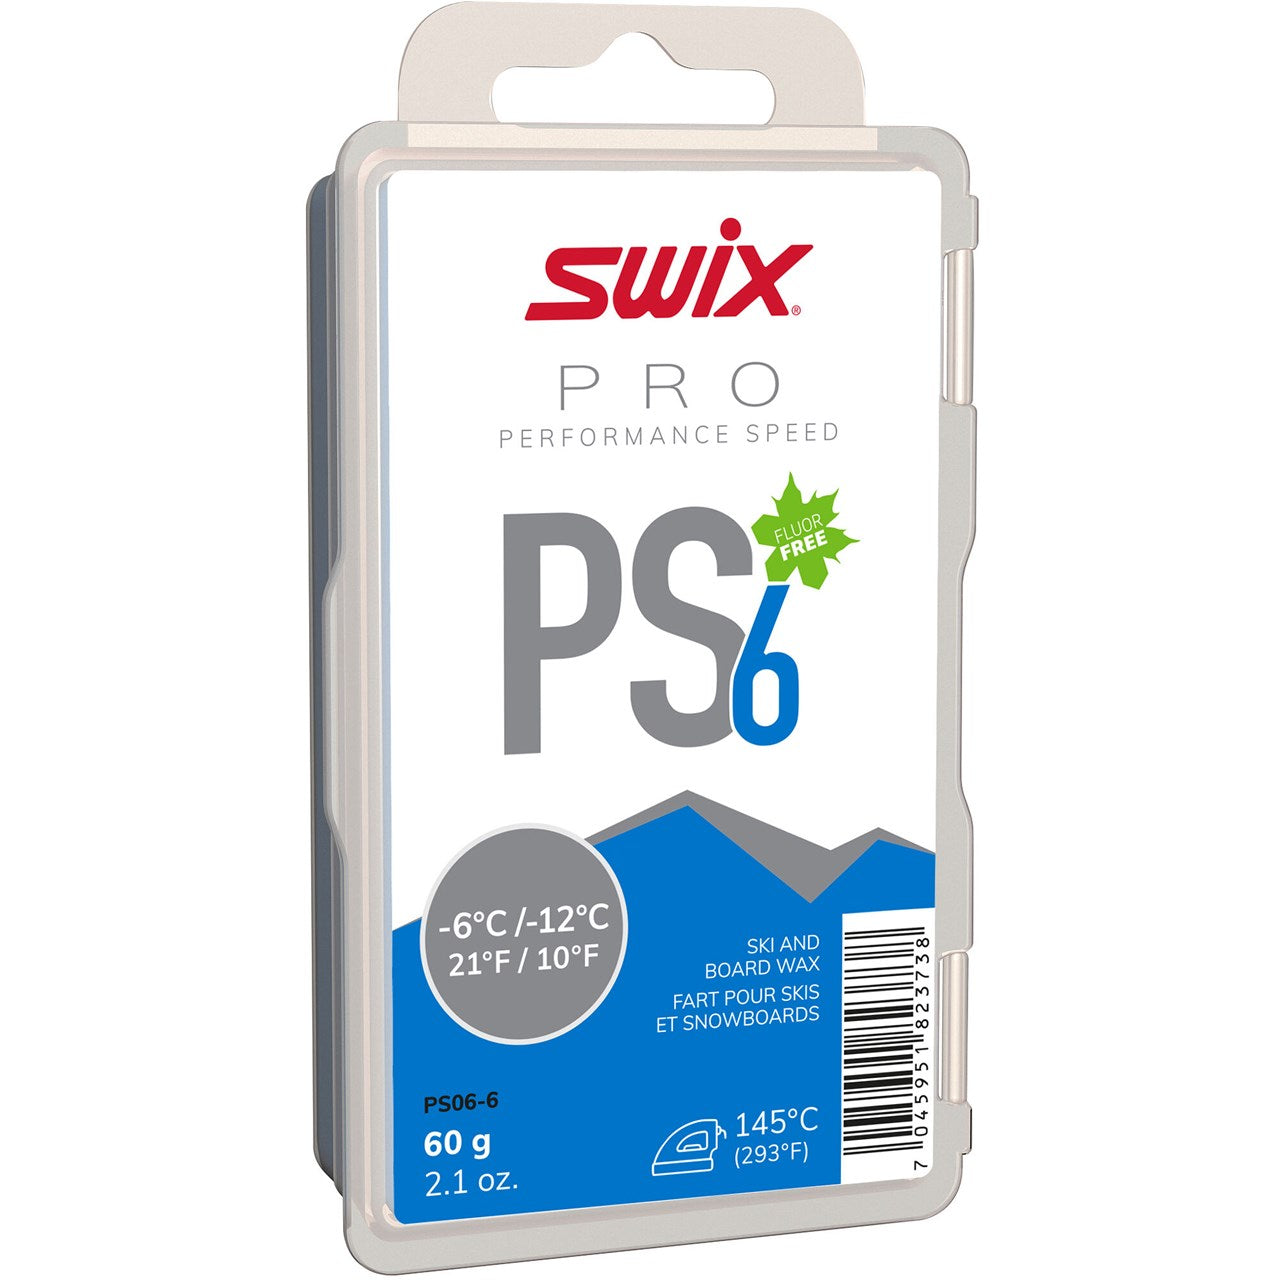 SWIX PS6 BLUE,-6C/-12C, 60G